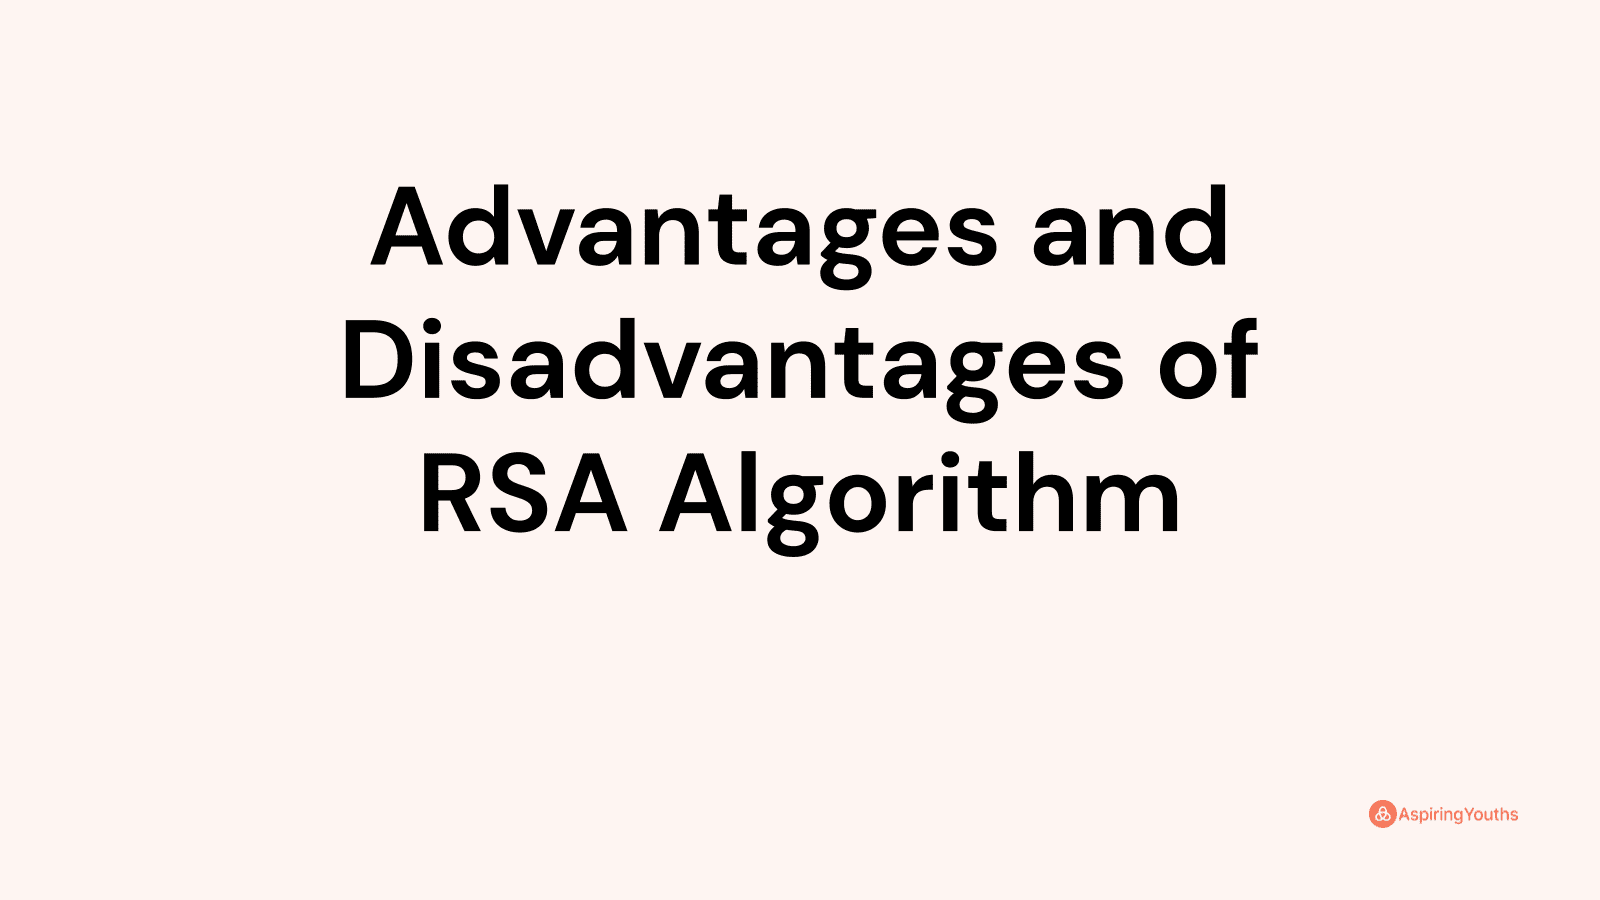 Advantages and disadvantages of RSA Algorithm